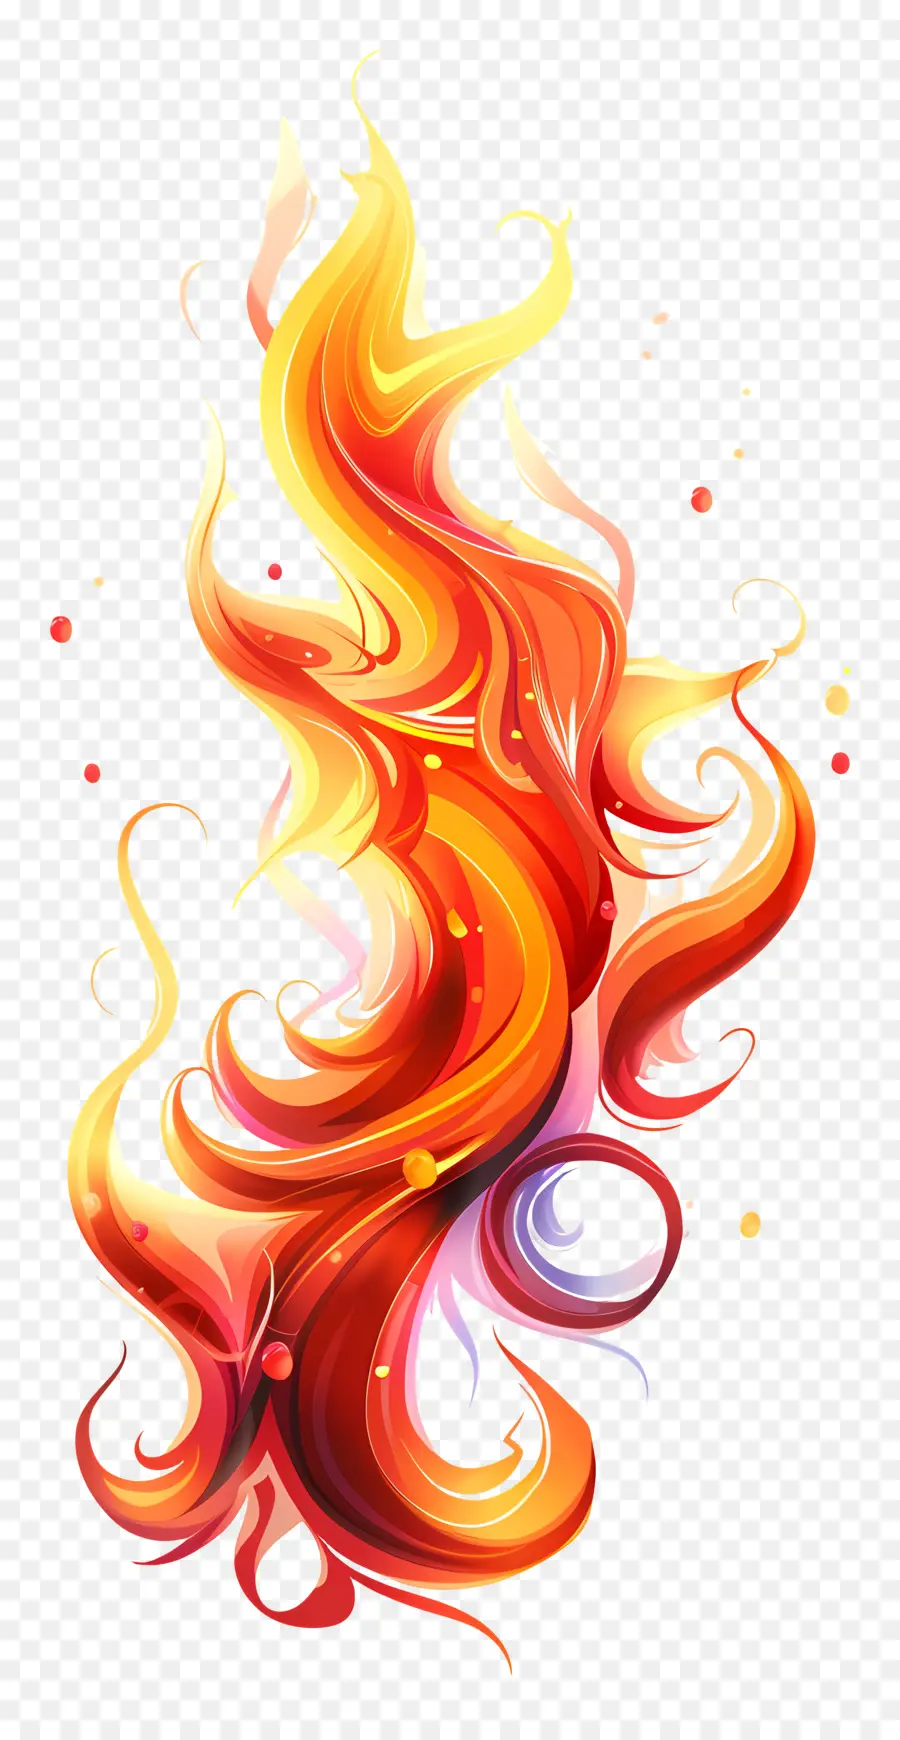 Ngọn Lửa Cháy - Ngọn lửa hoạt hình đầy màu sắc bùng nổ từ nền đen